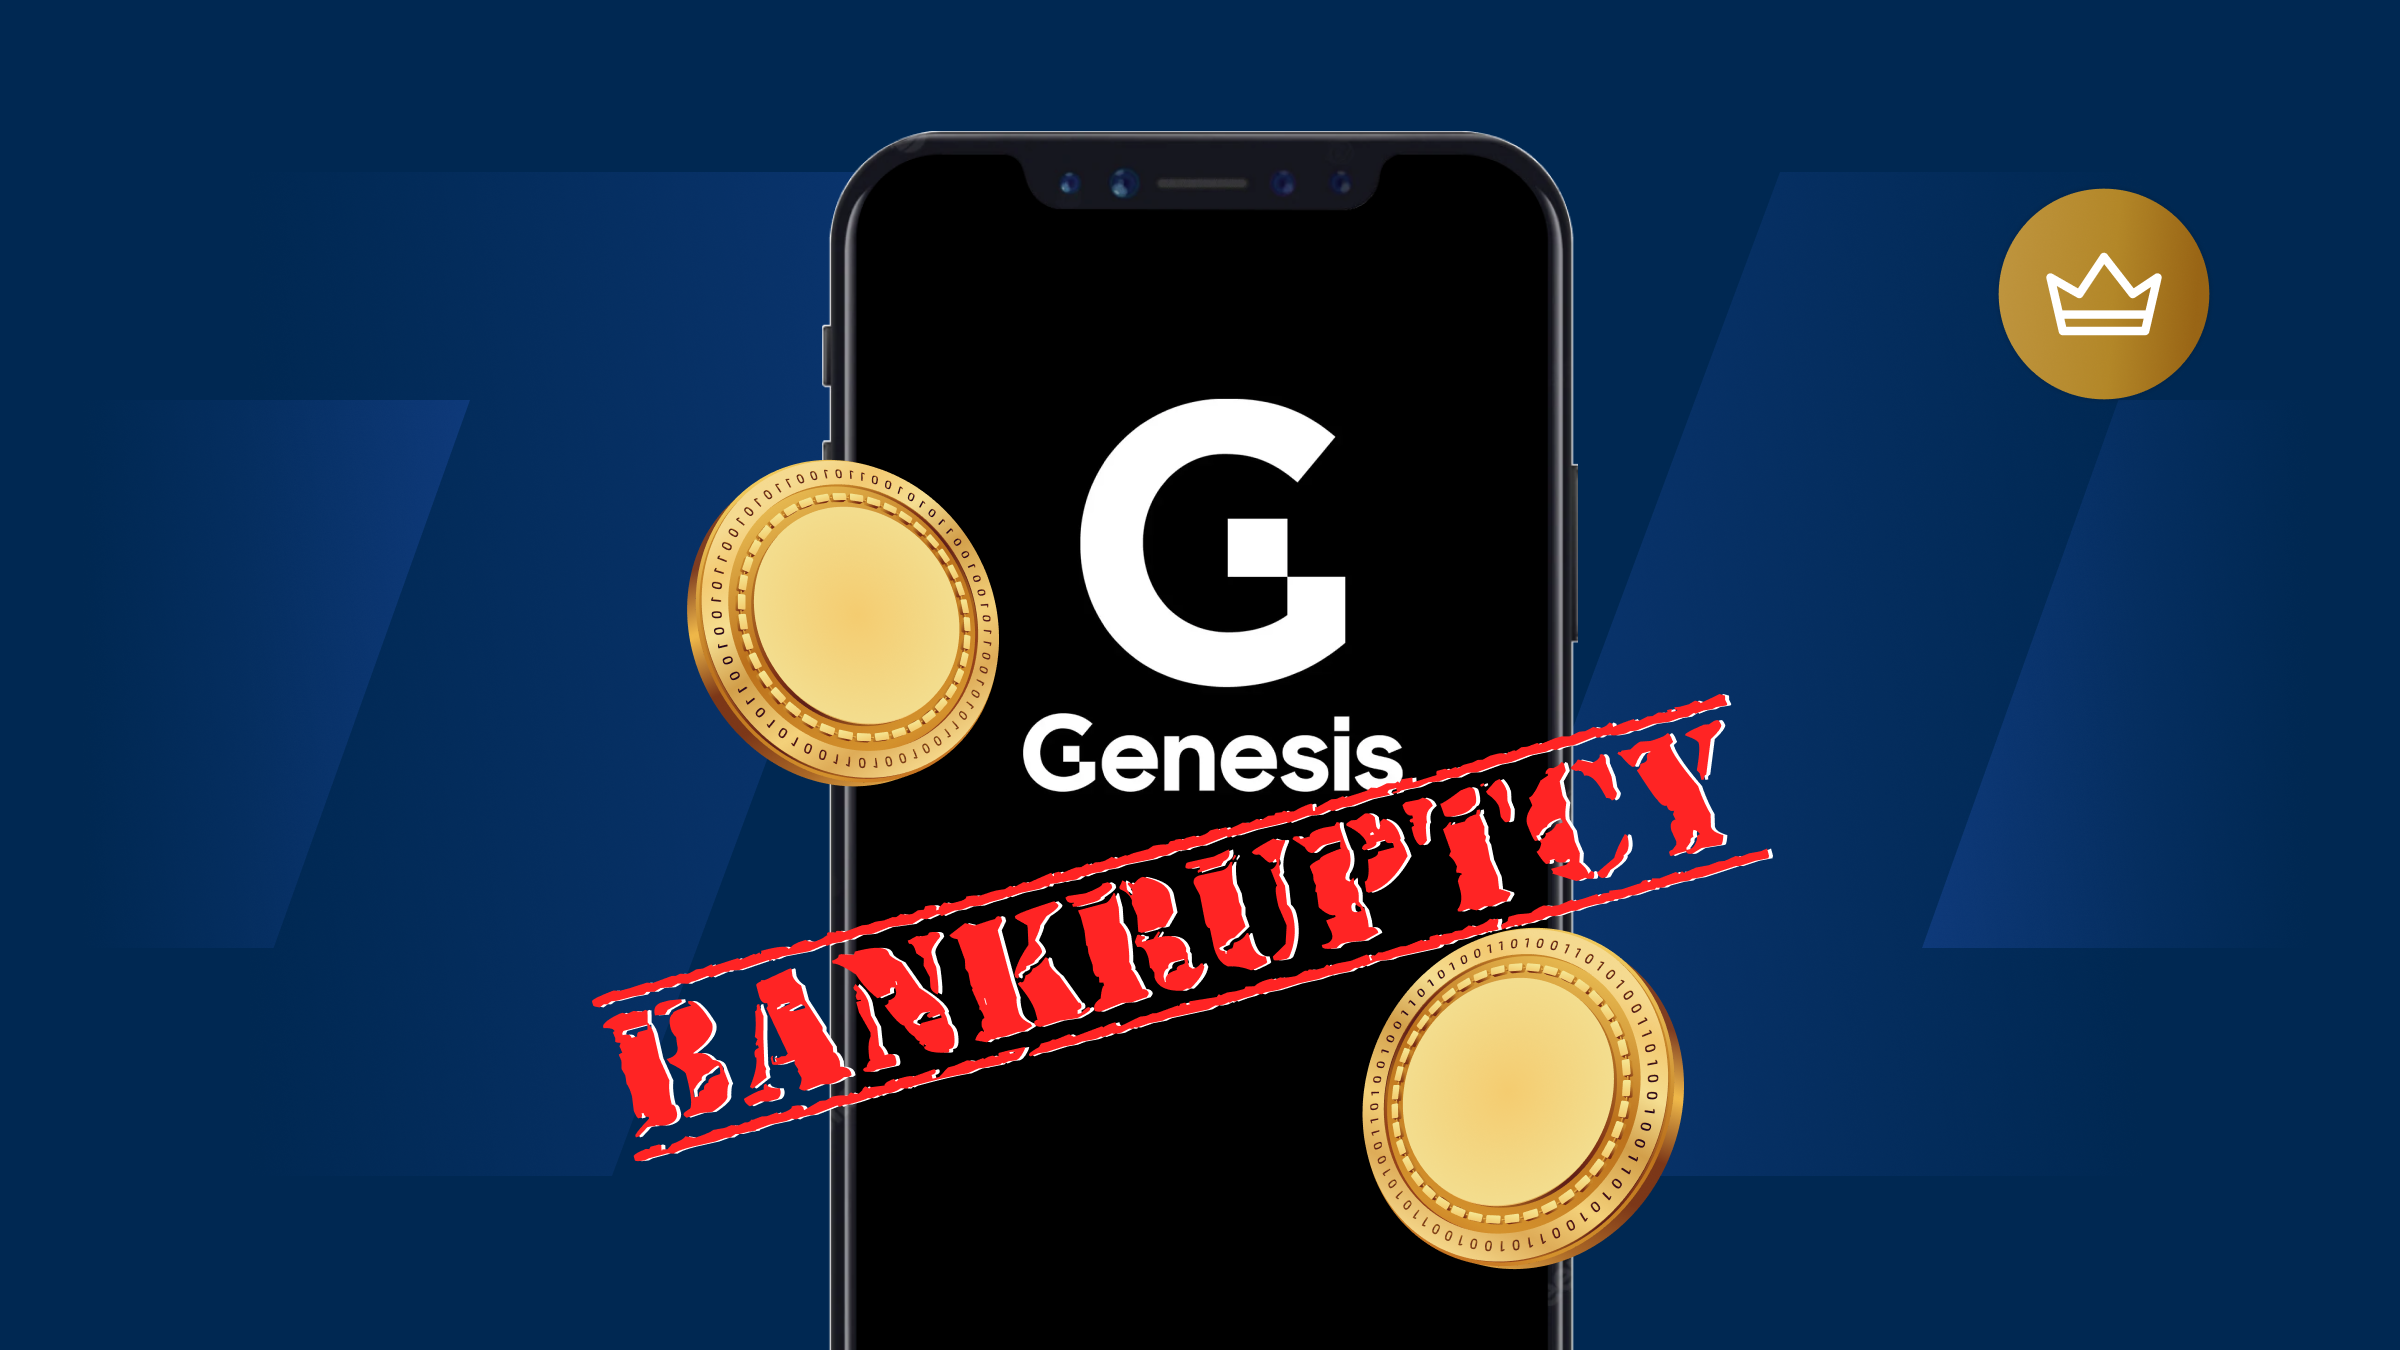 Genesis Bankcruptcy